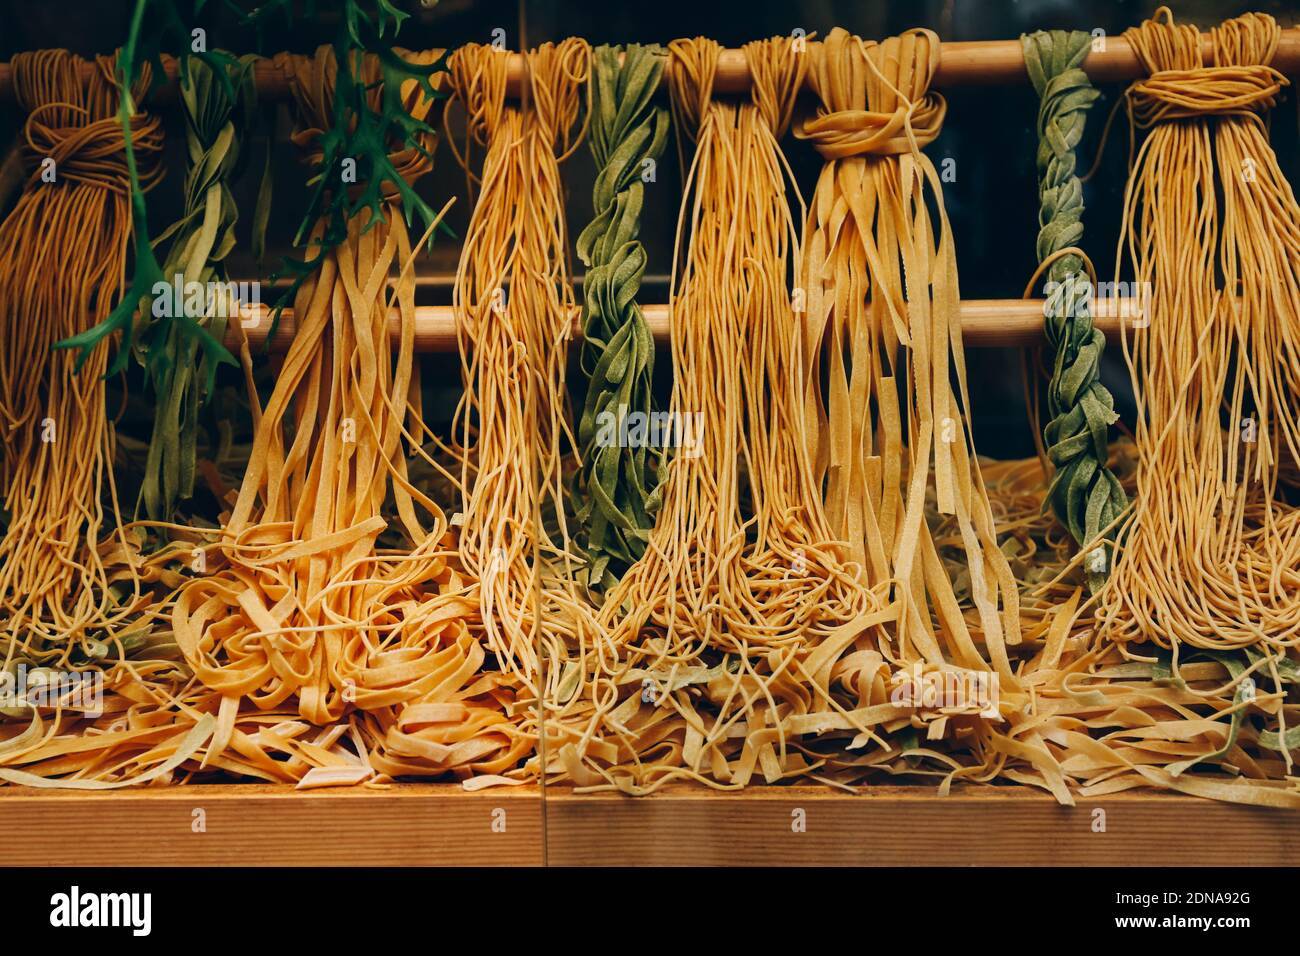 Primo piano su diversi tipi di pasta fatta a mano sulla vetrina di caffè, ristorante, mercato alimentare in vendita. Foto Stock